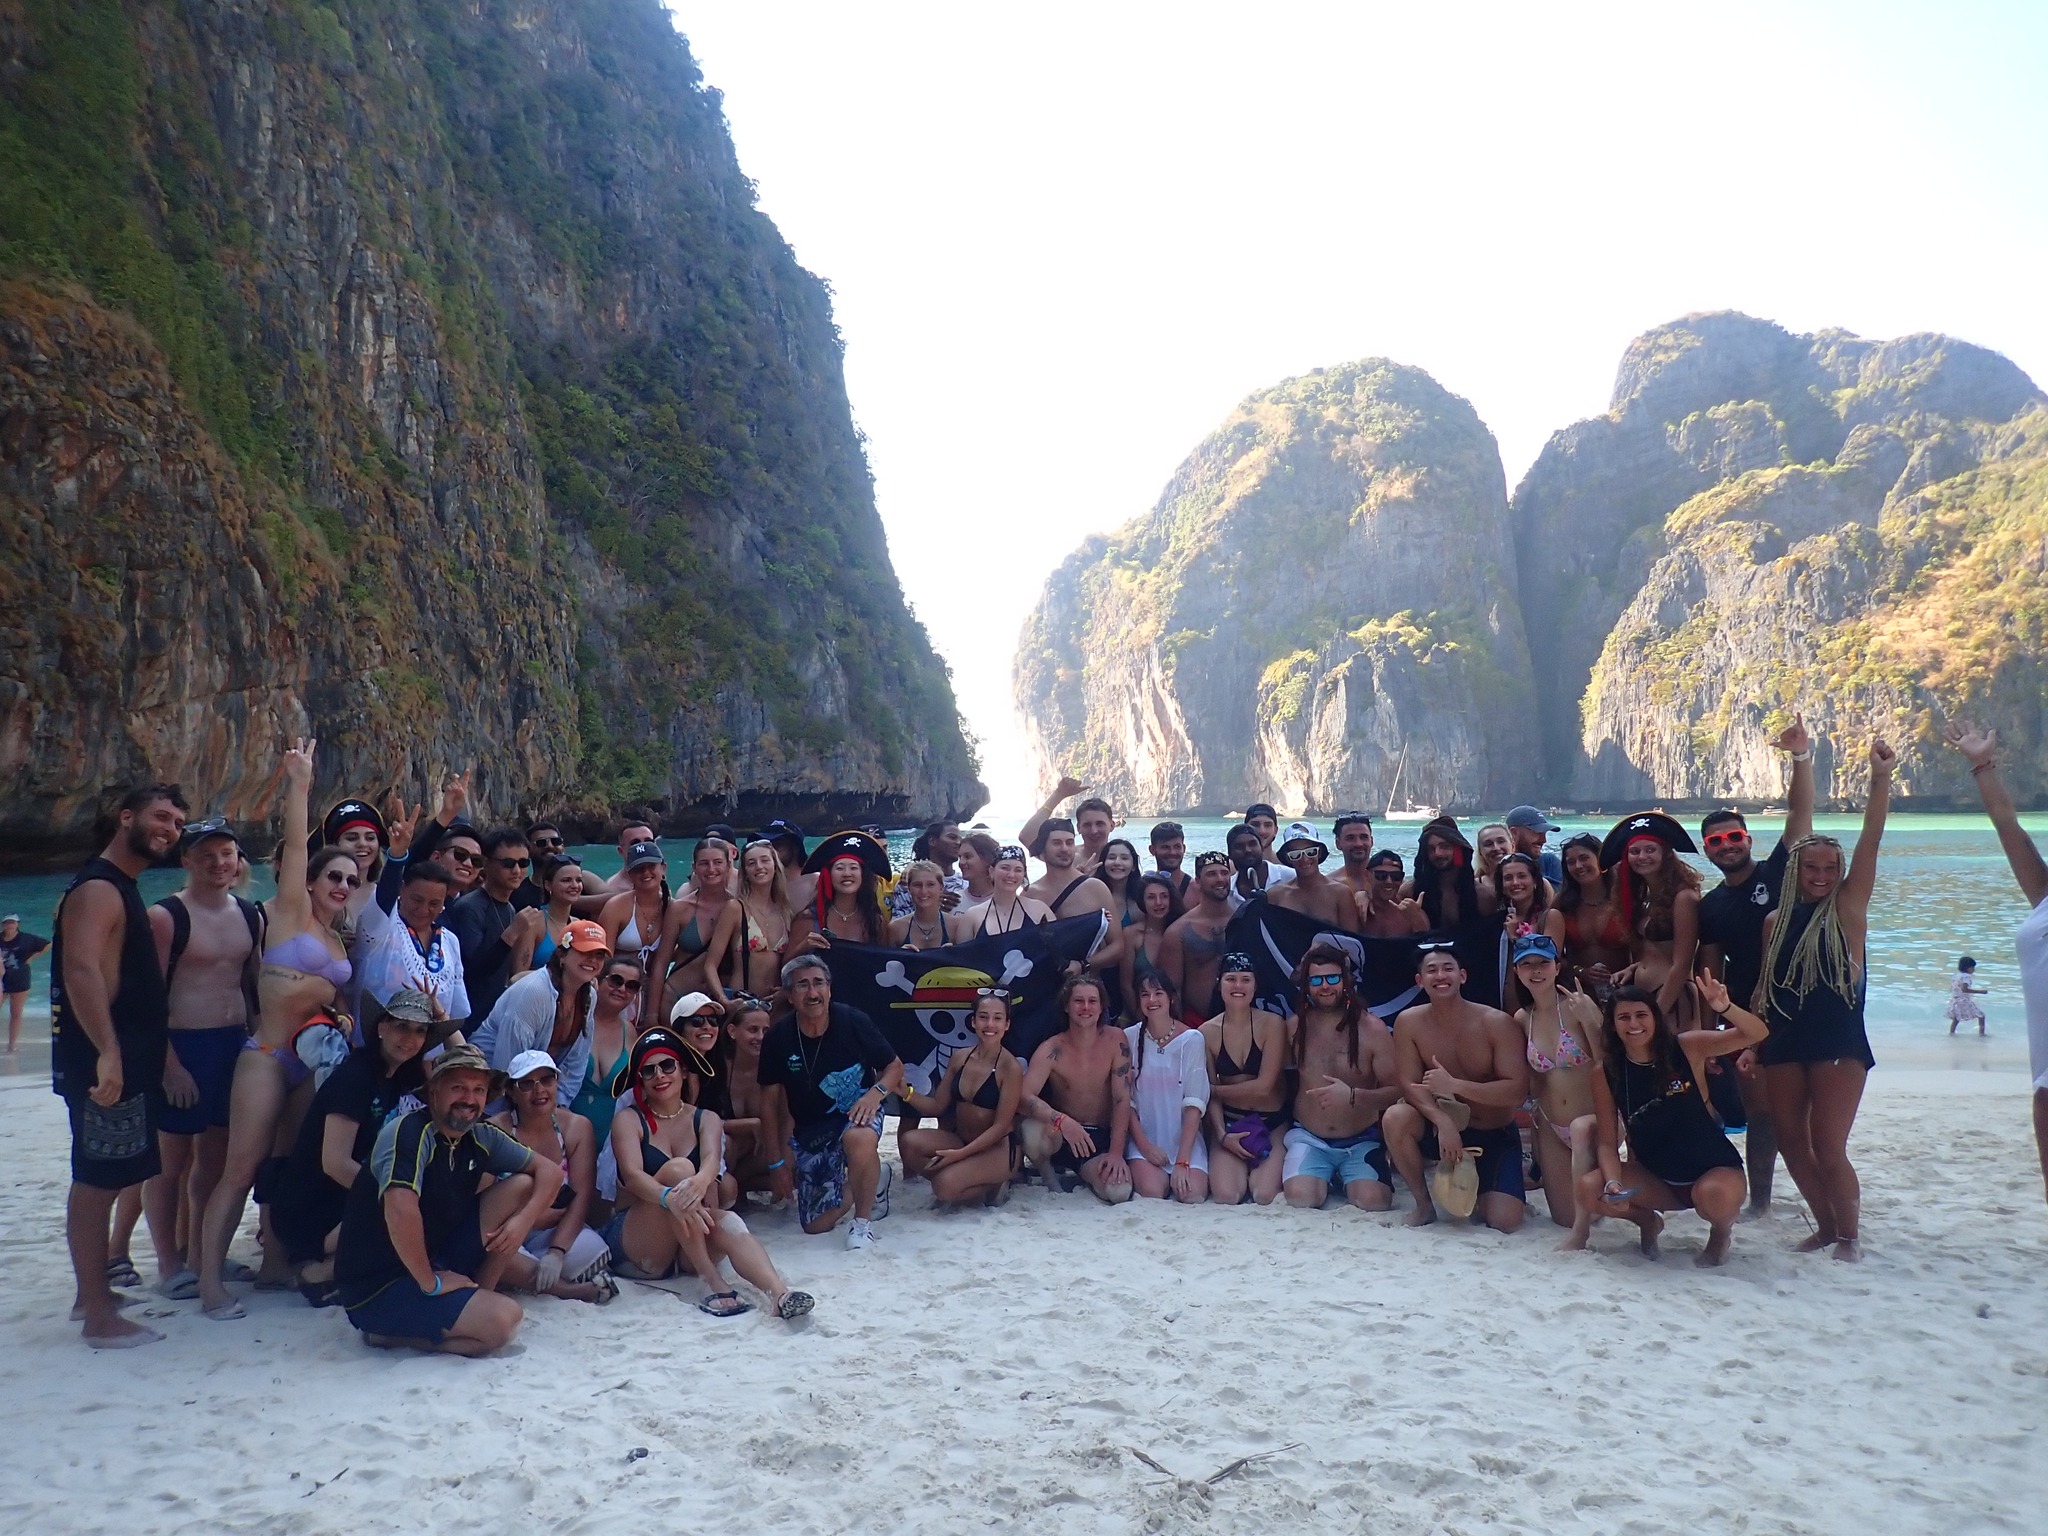 group photo during phi phi island tour with pirate boat taken at maya bay